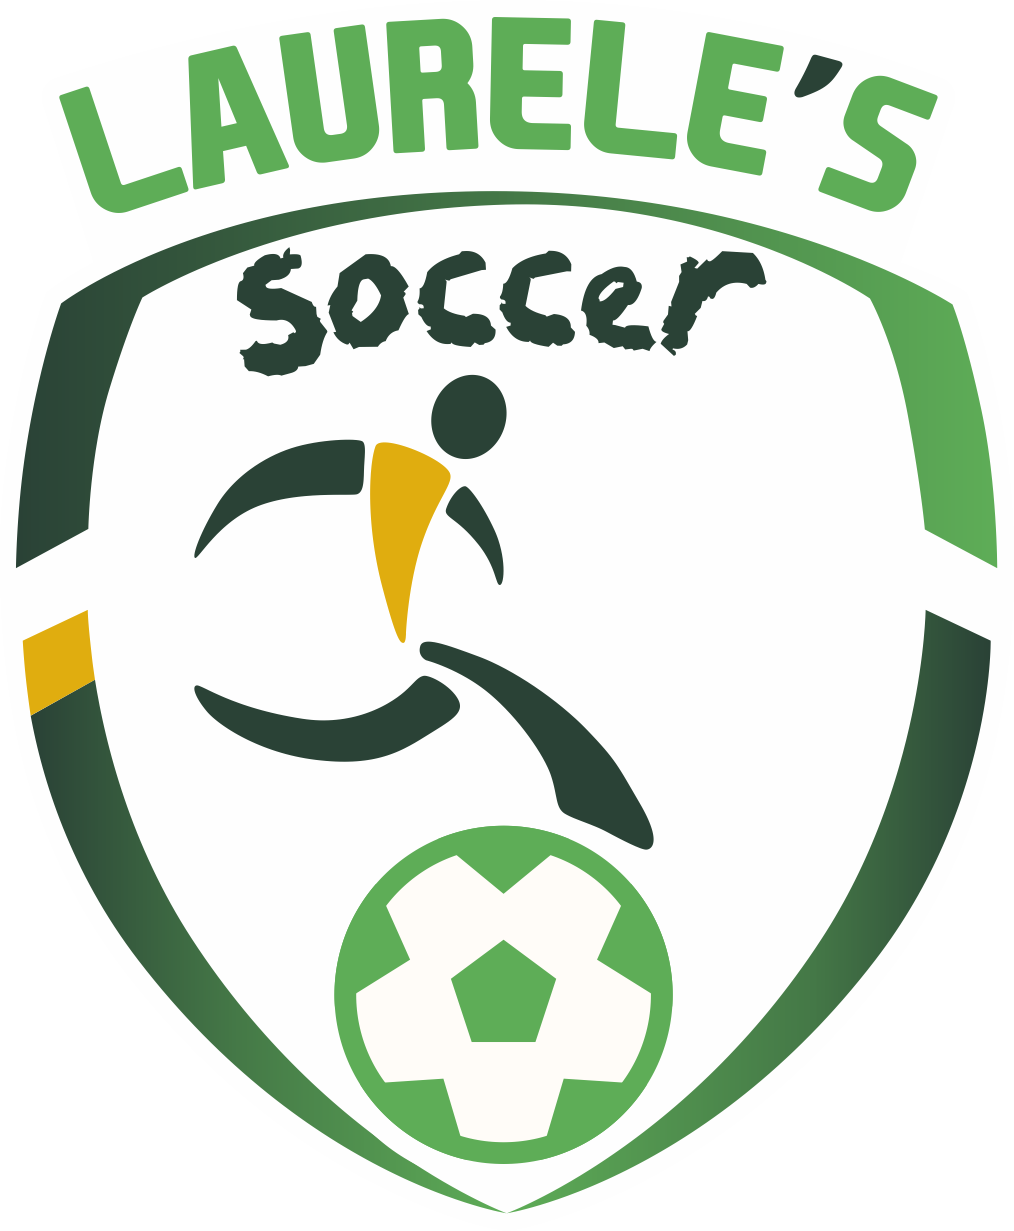 laureles_soccer